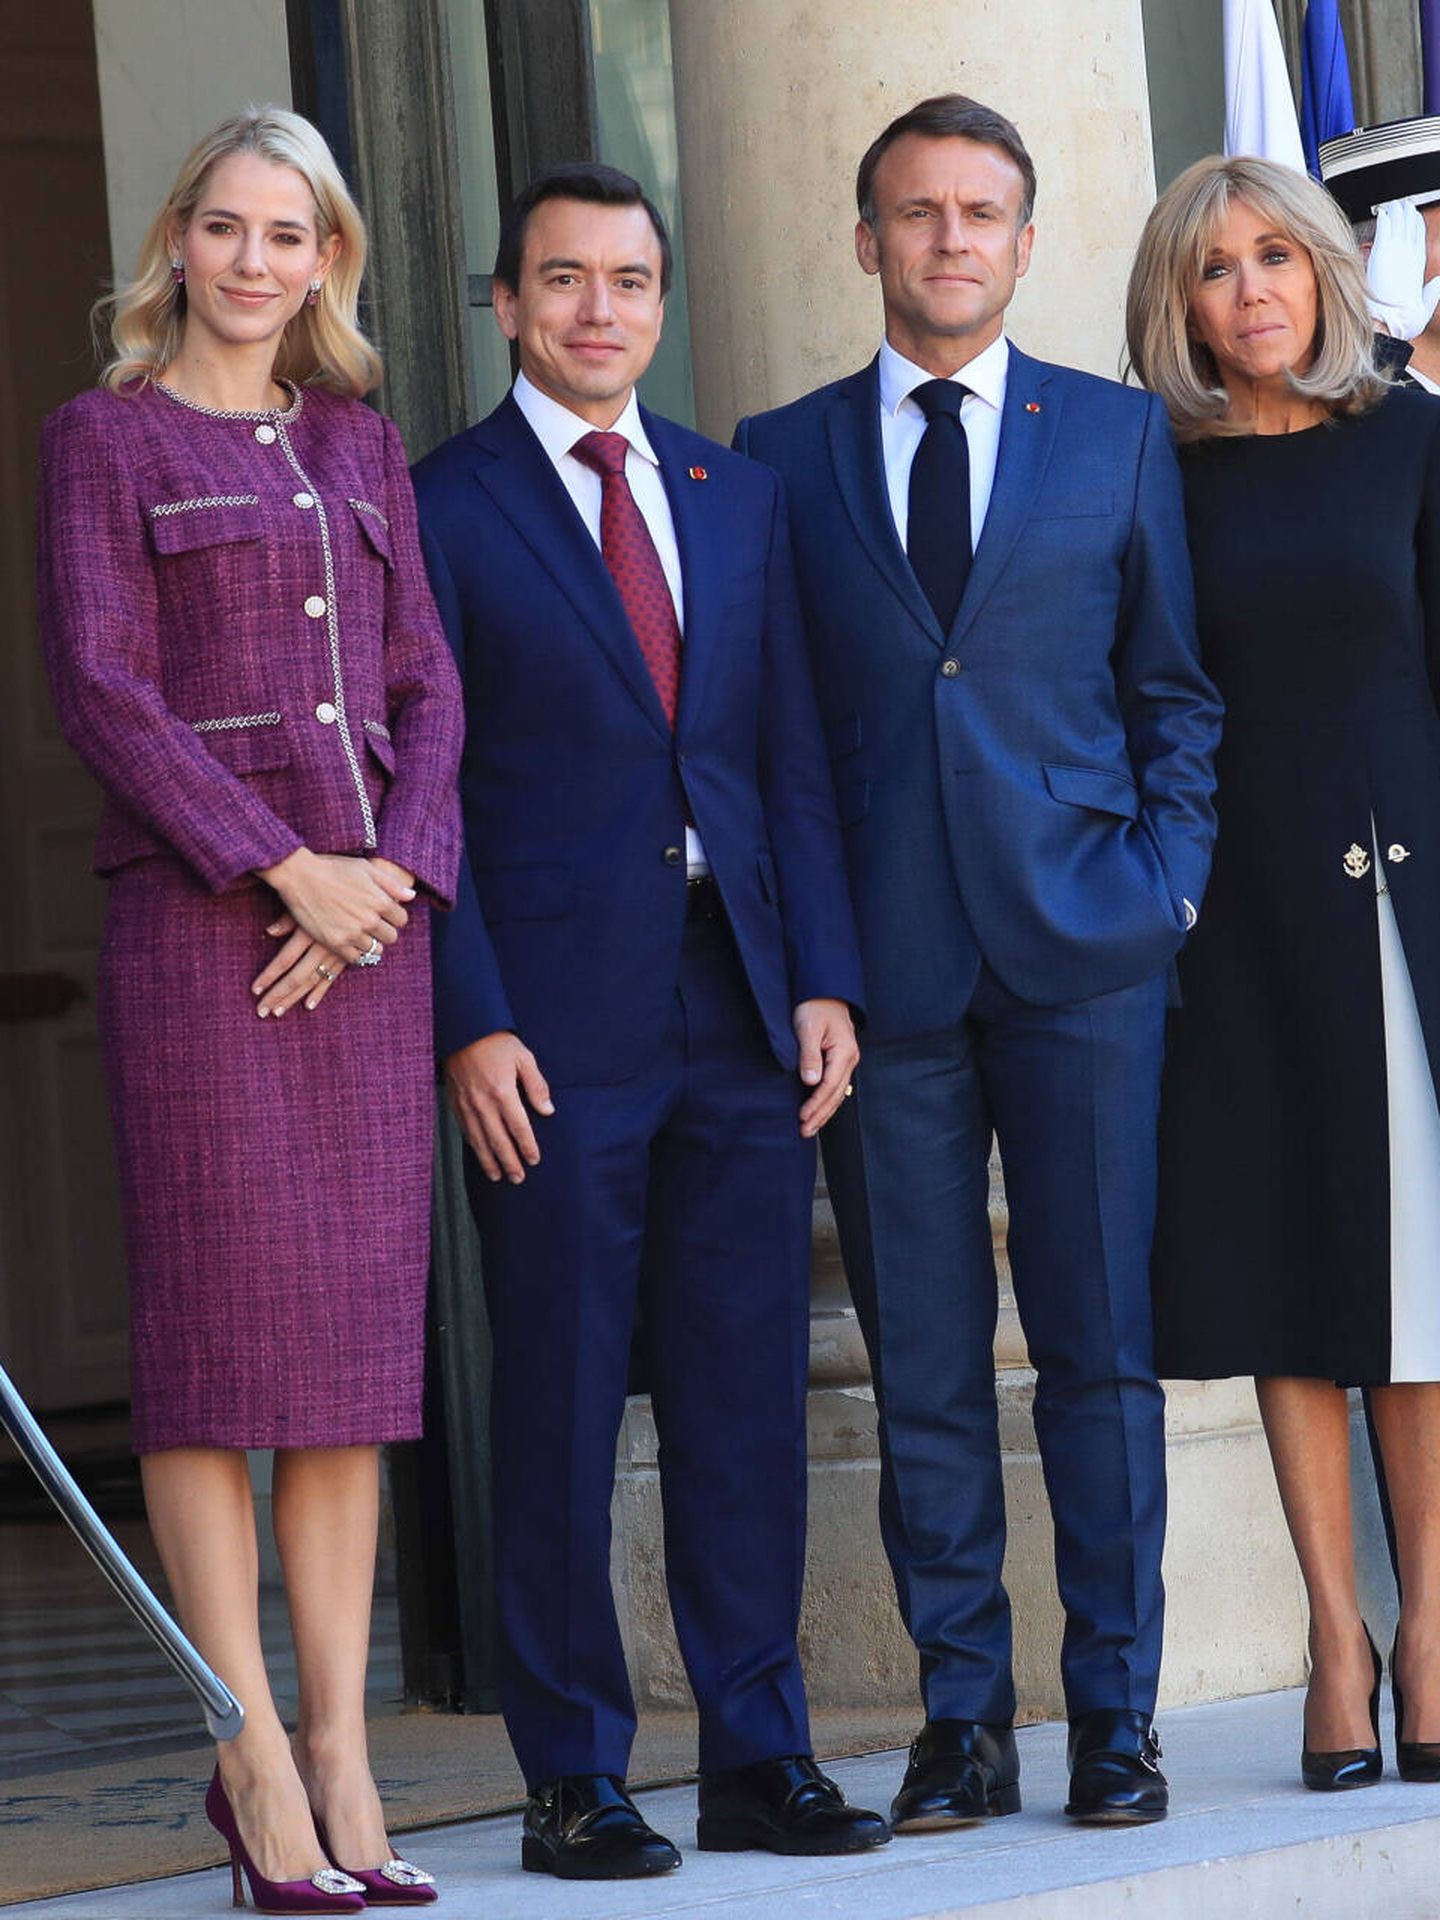 Lavinia Valbonesi y Daniel Noboa visitan el Palacio de los Campos Elíseos al encuentro de los Macron. (Gtres)